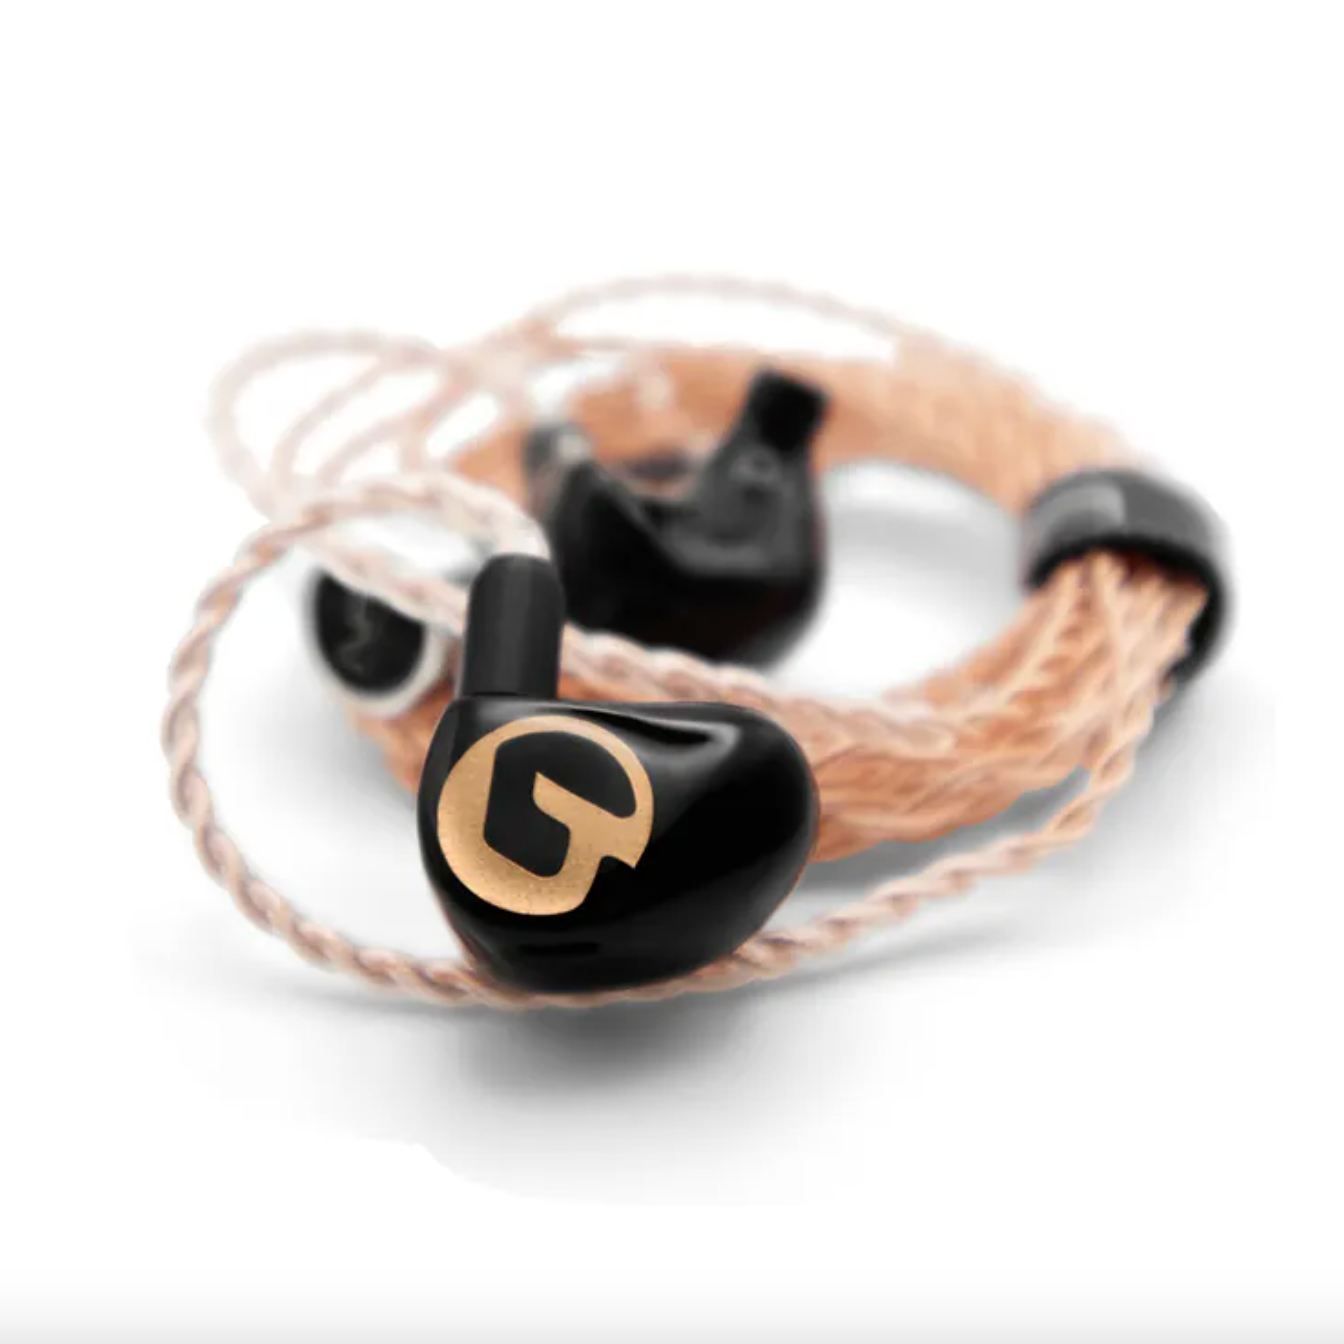 Gaudio Tian in-ear headphones